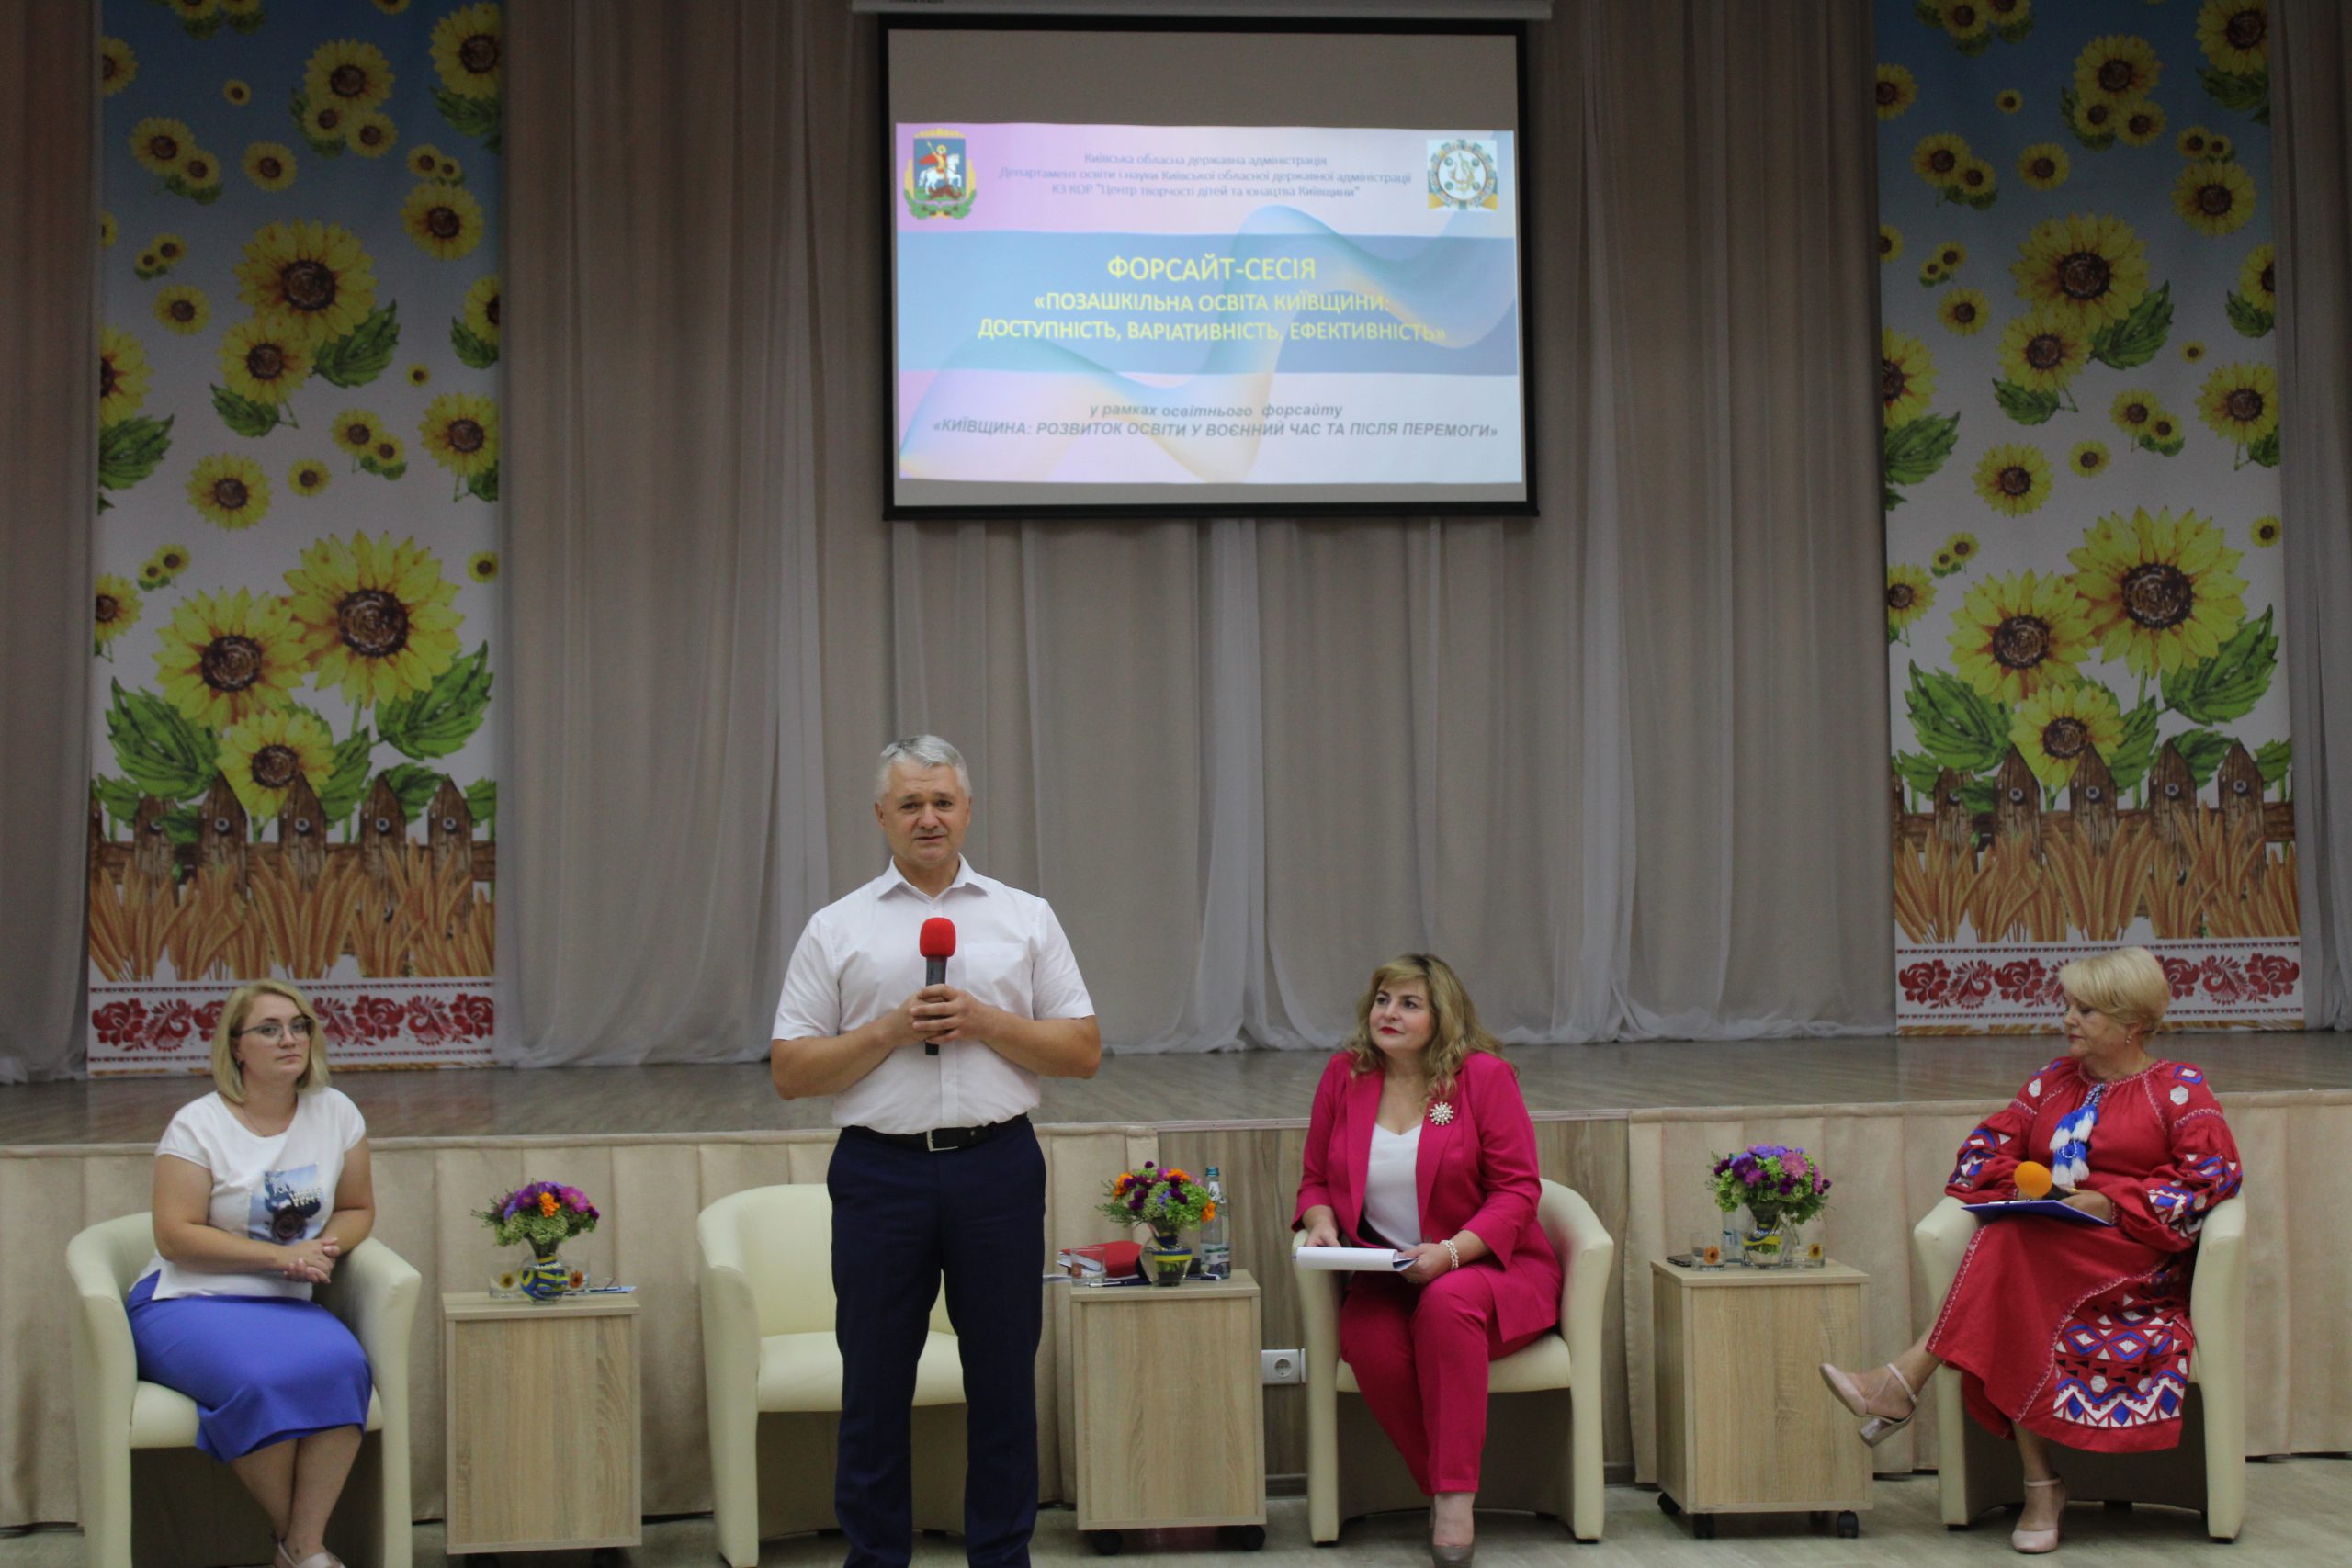 Форсайт-сесія «Позашкільна освіта Київщини: доступність, варіативність, ефективність»